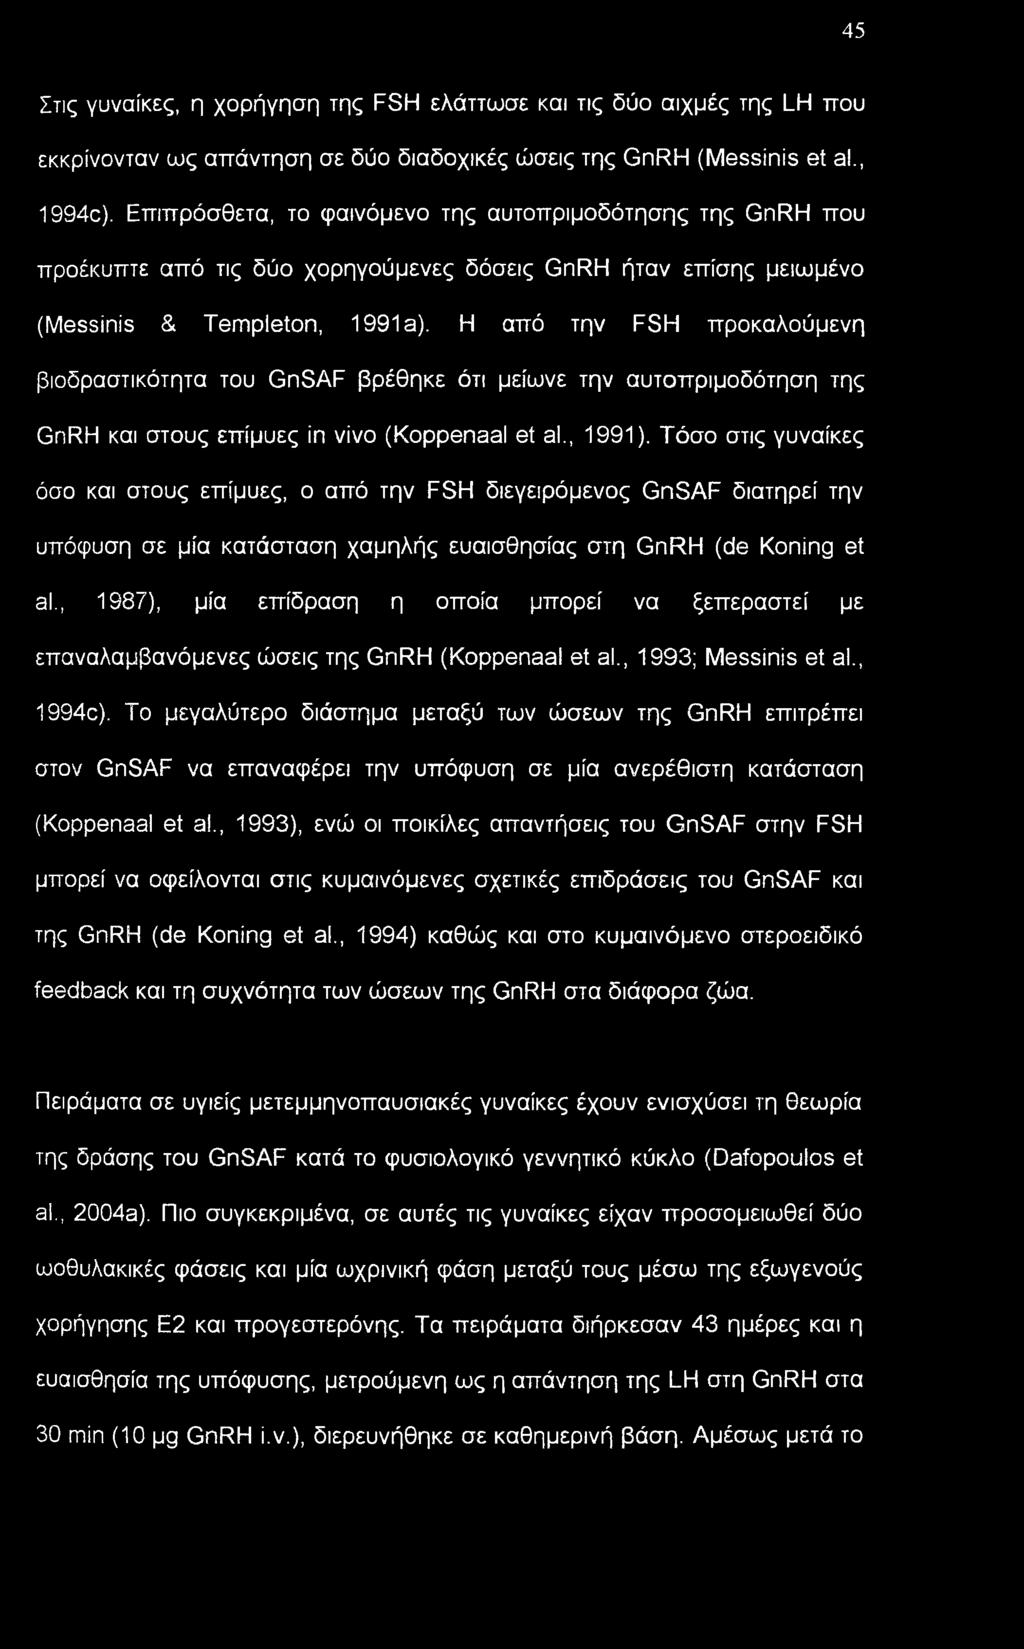 Η από την FSH προκαλούμενη βιοδραστικότητα του GnSAF βρέθηκε ότι μείωνε την αυτοπριμοδότηση της GnRH και στους επίμυες in vivo (Koppenaal et al., 1991).